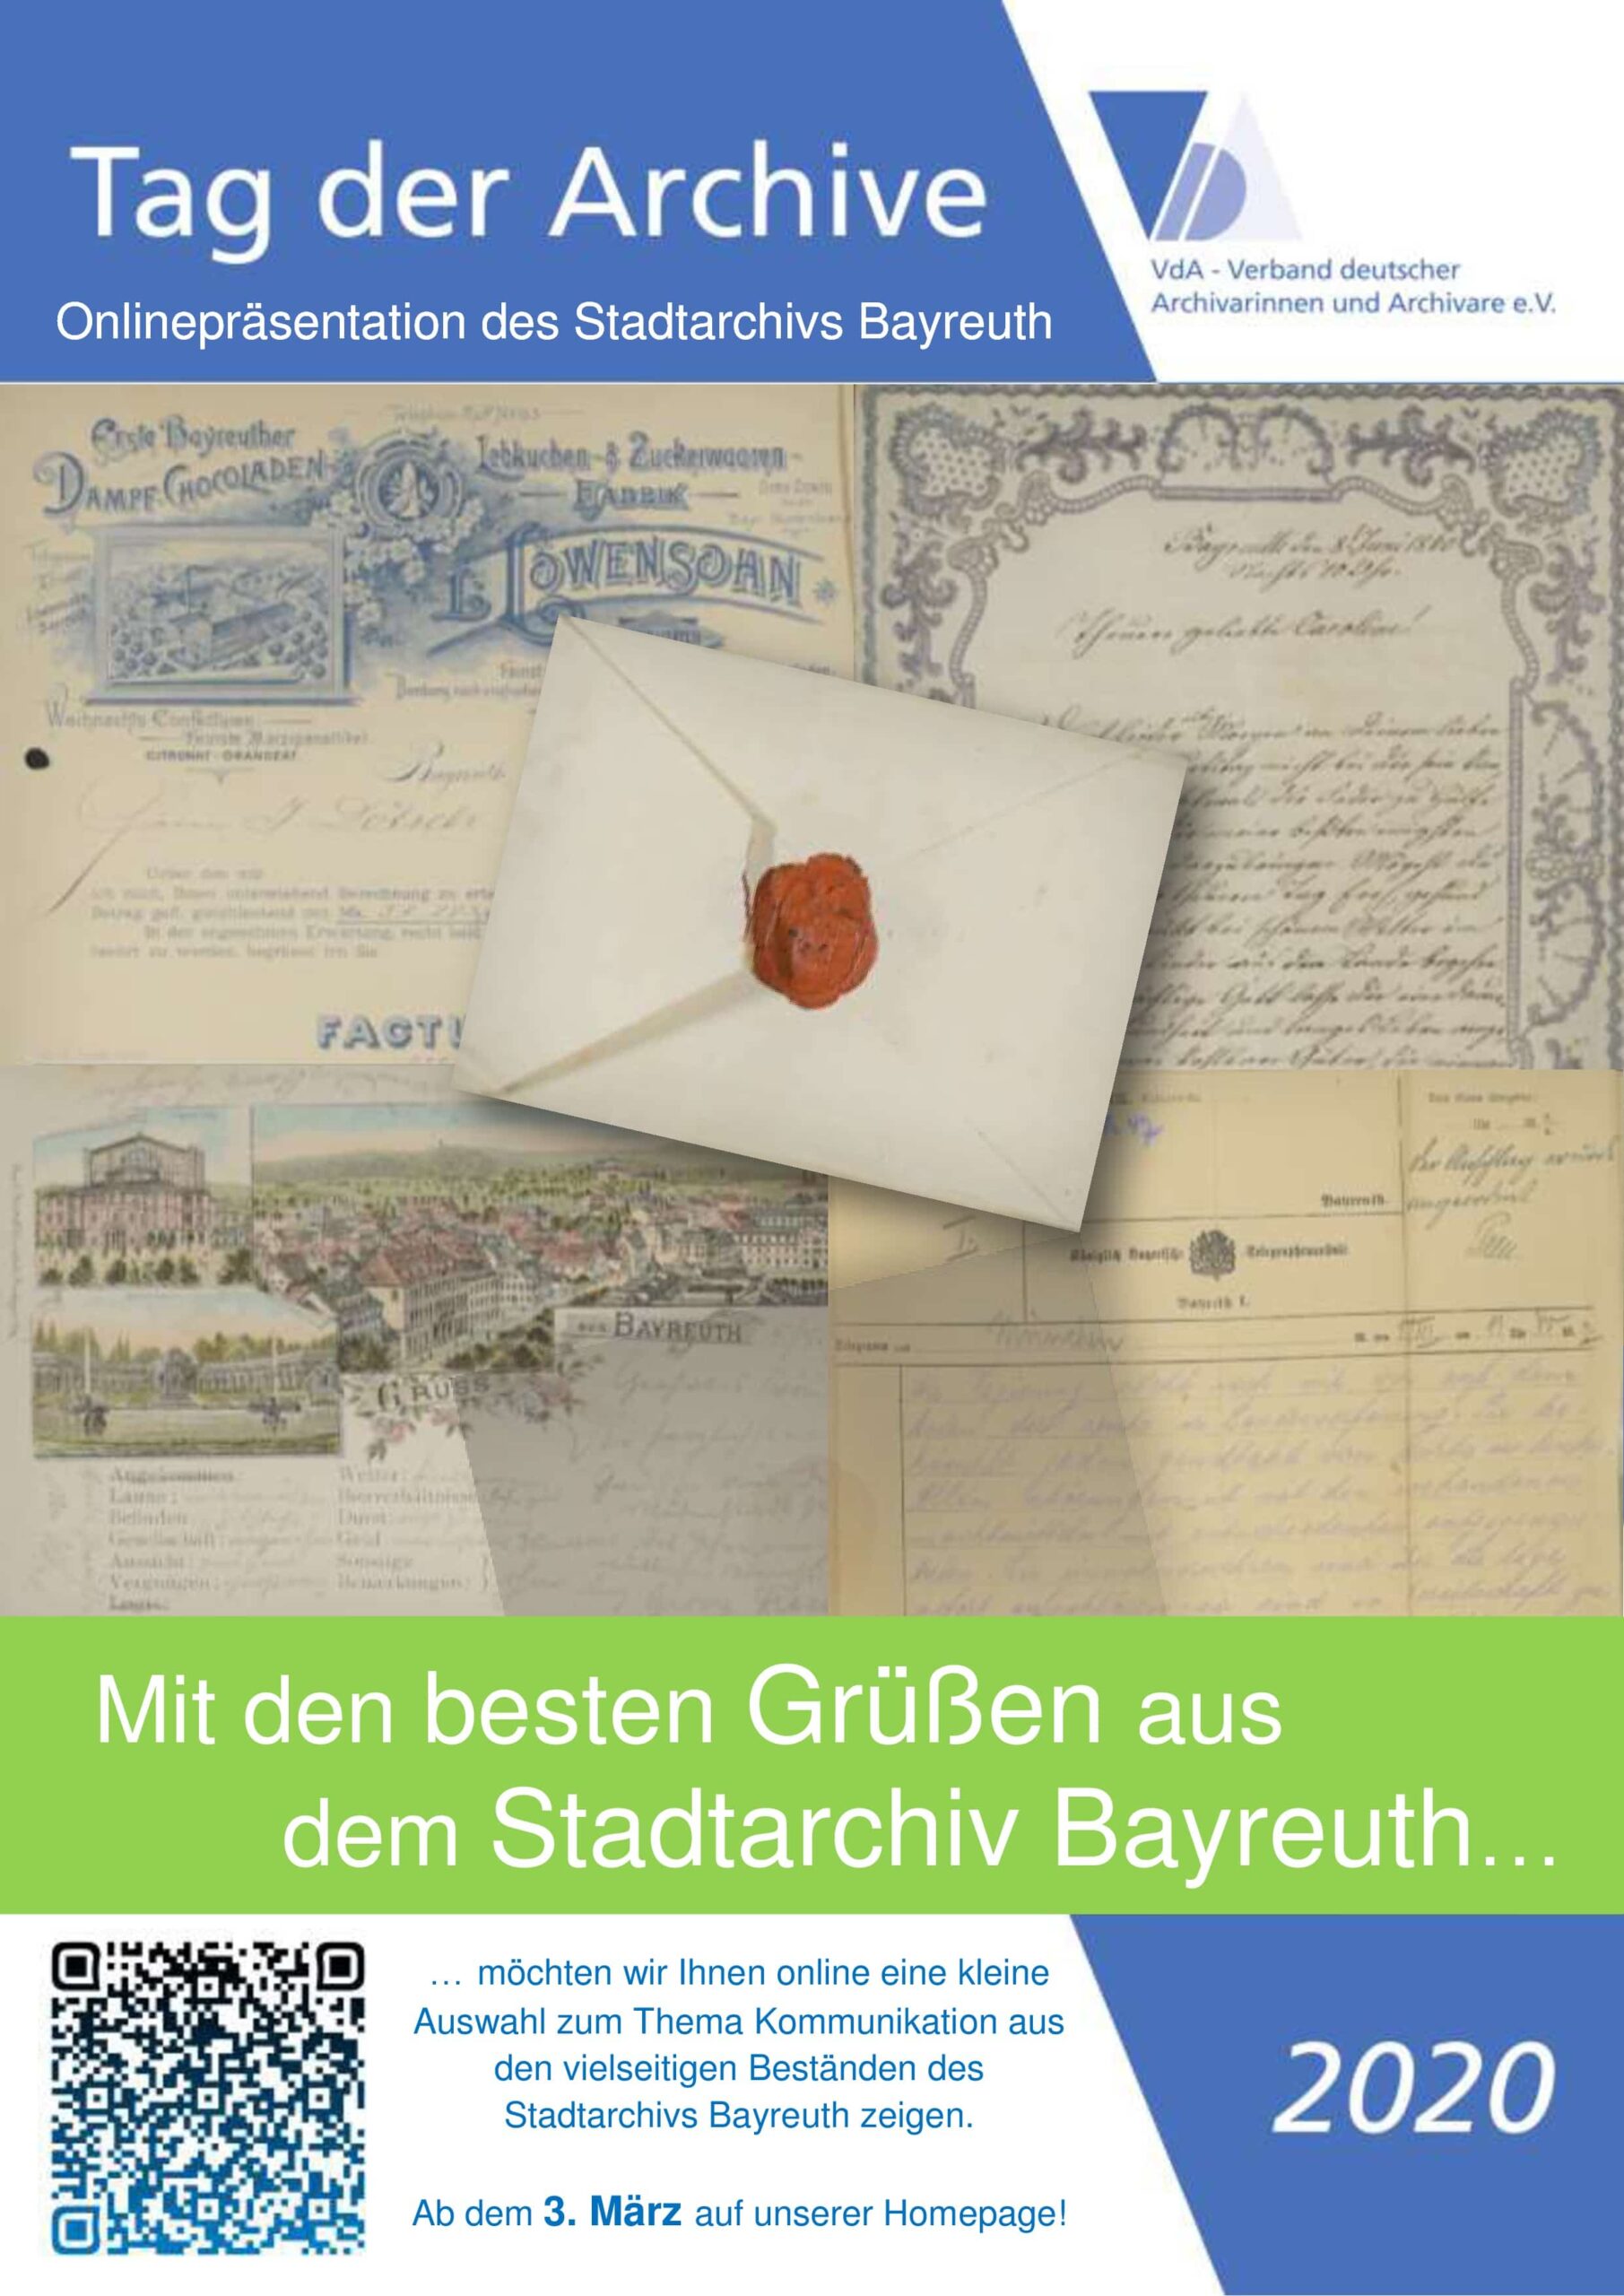 Flyer zur Onlinepräsentation des Stadtarchivs Bayreuth vom 3. bis 6. März im Rahmen des 10. Tages der Archive